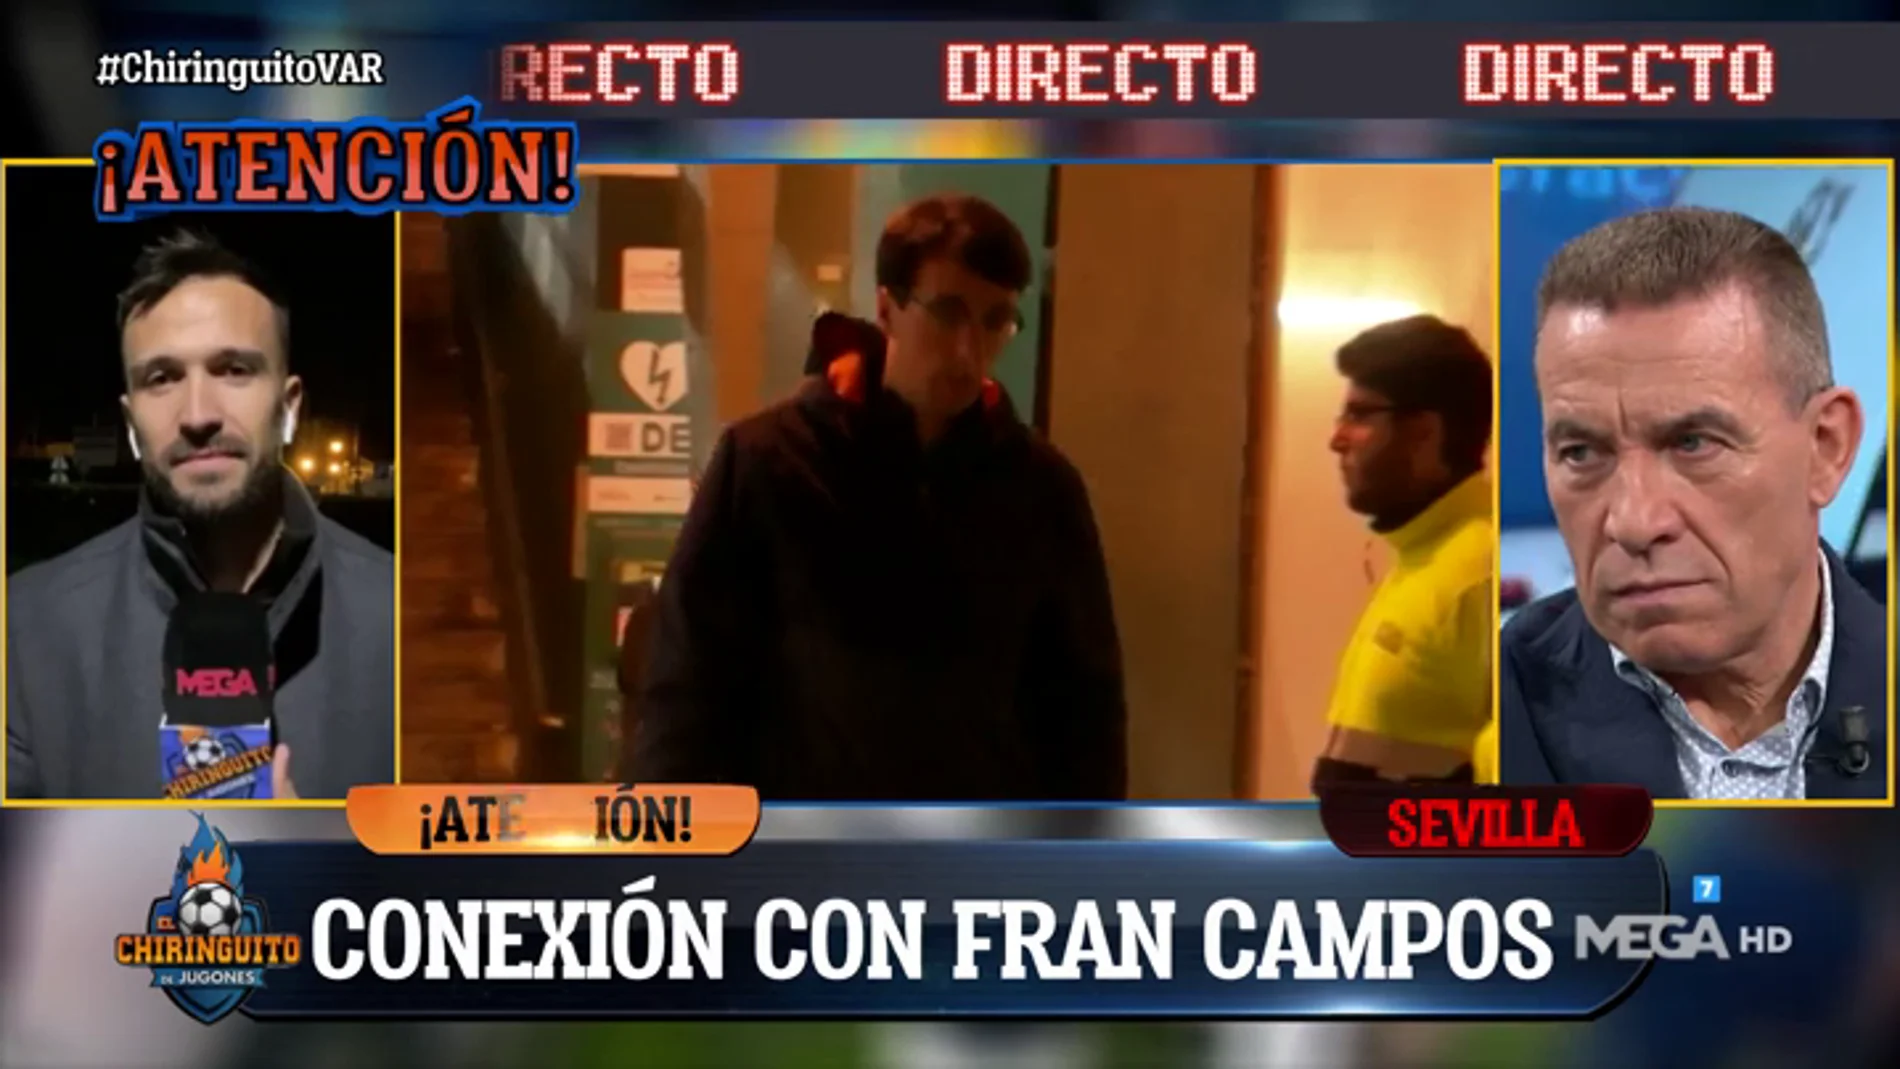 Fran Campos: "El Real Betis cree que hay una persecución arbitral contra ellos"